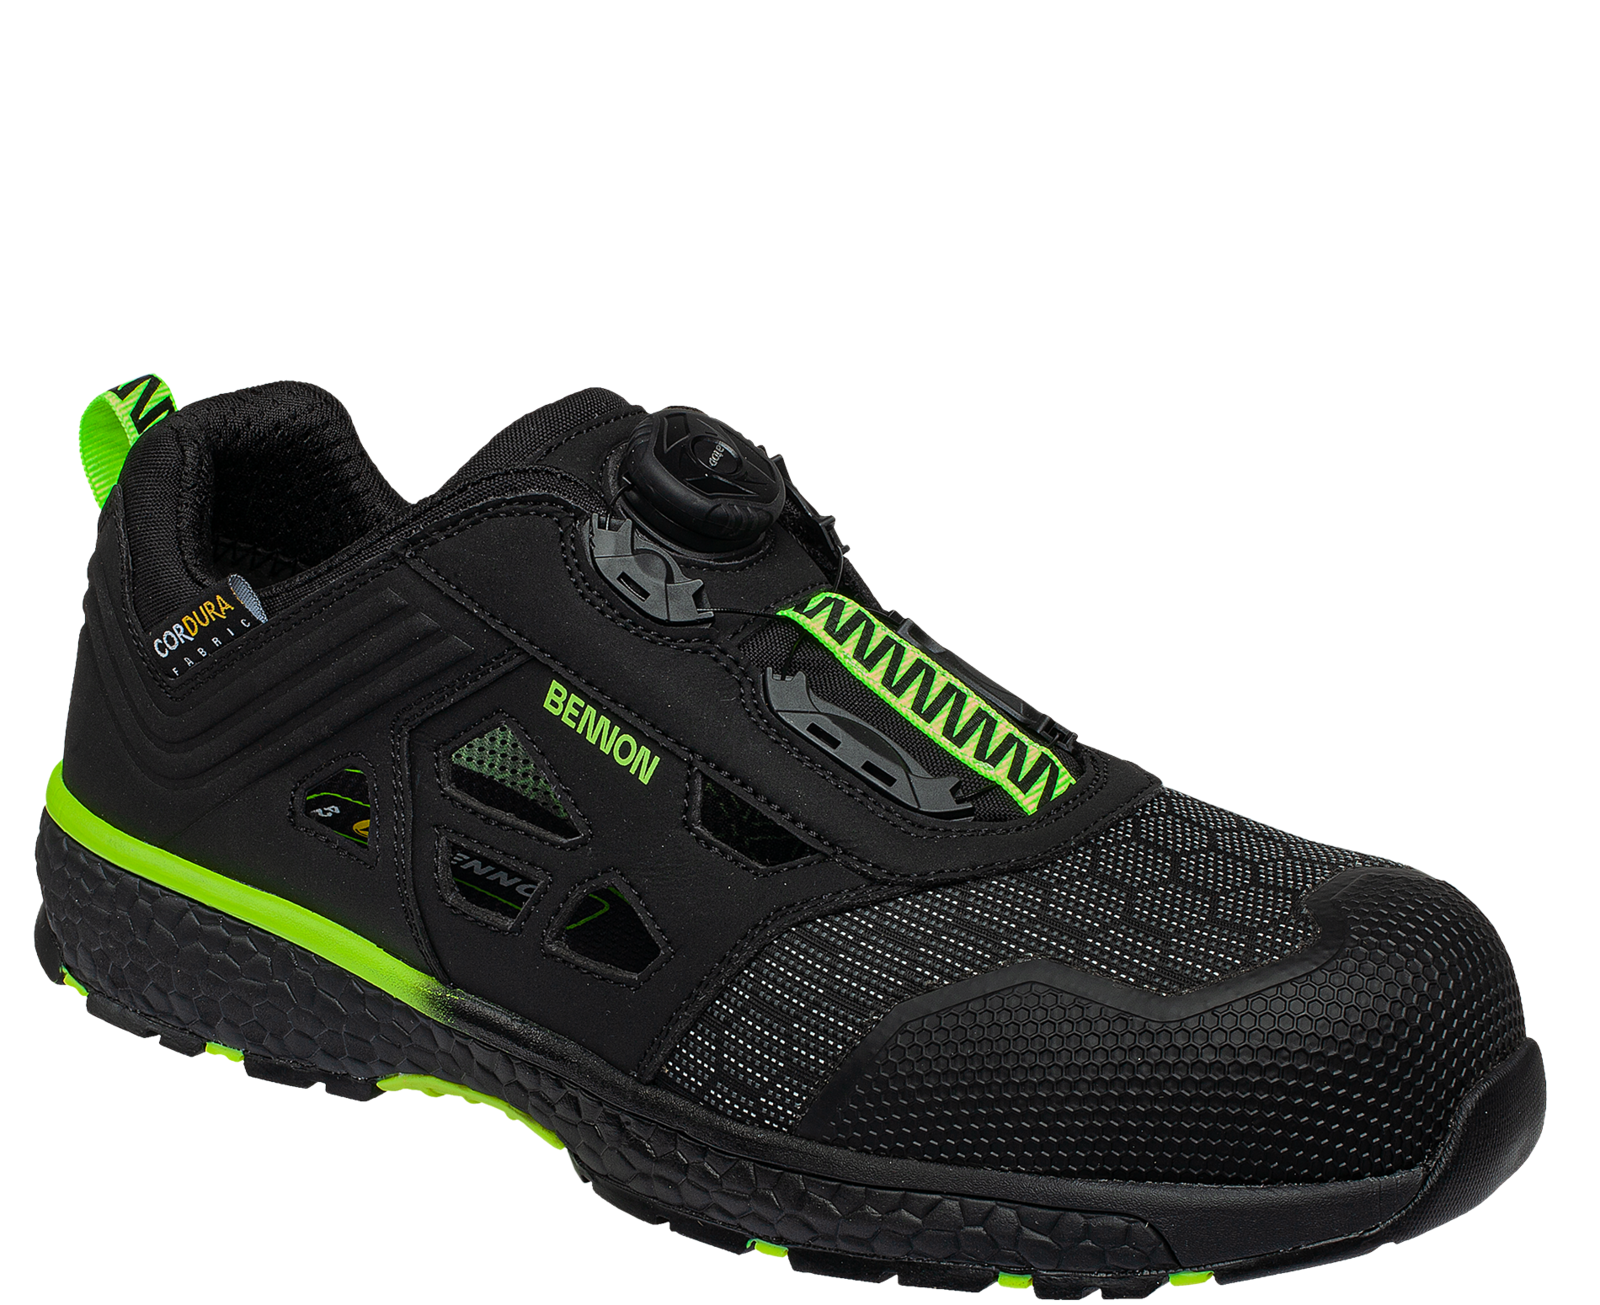 Bezpečnostné sandále Bennon Predator S1P ESD - veľkosť: 41, farba: čierna/zelená